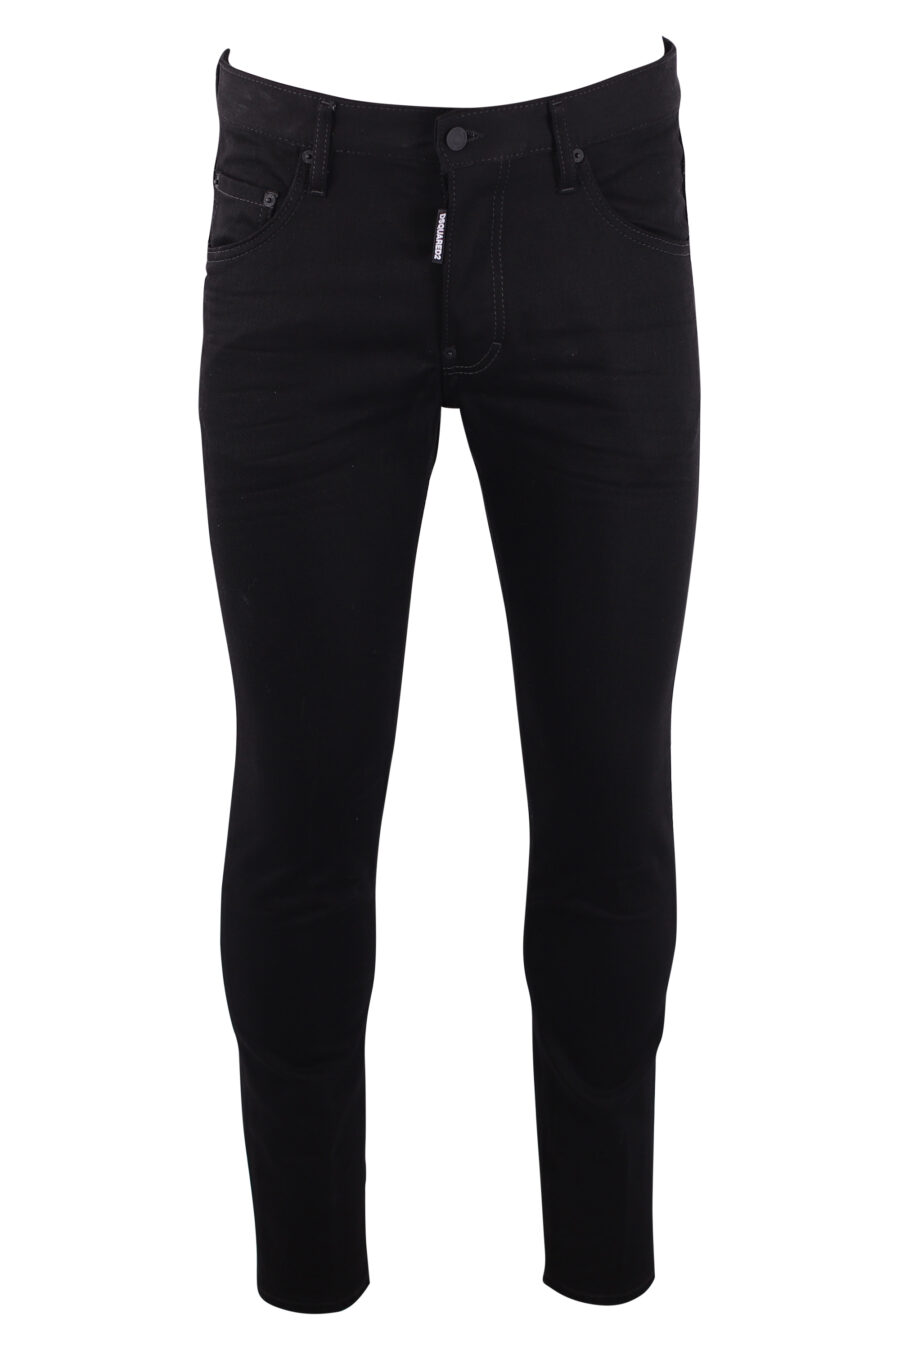 Skater jeans black - IMG 3191